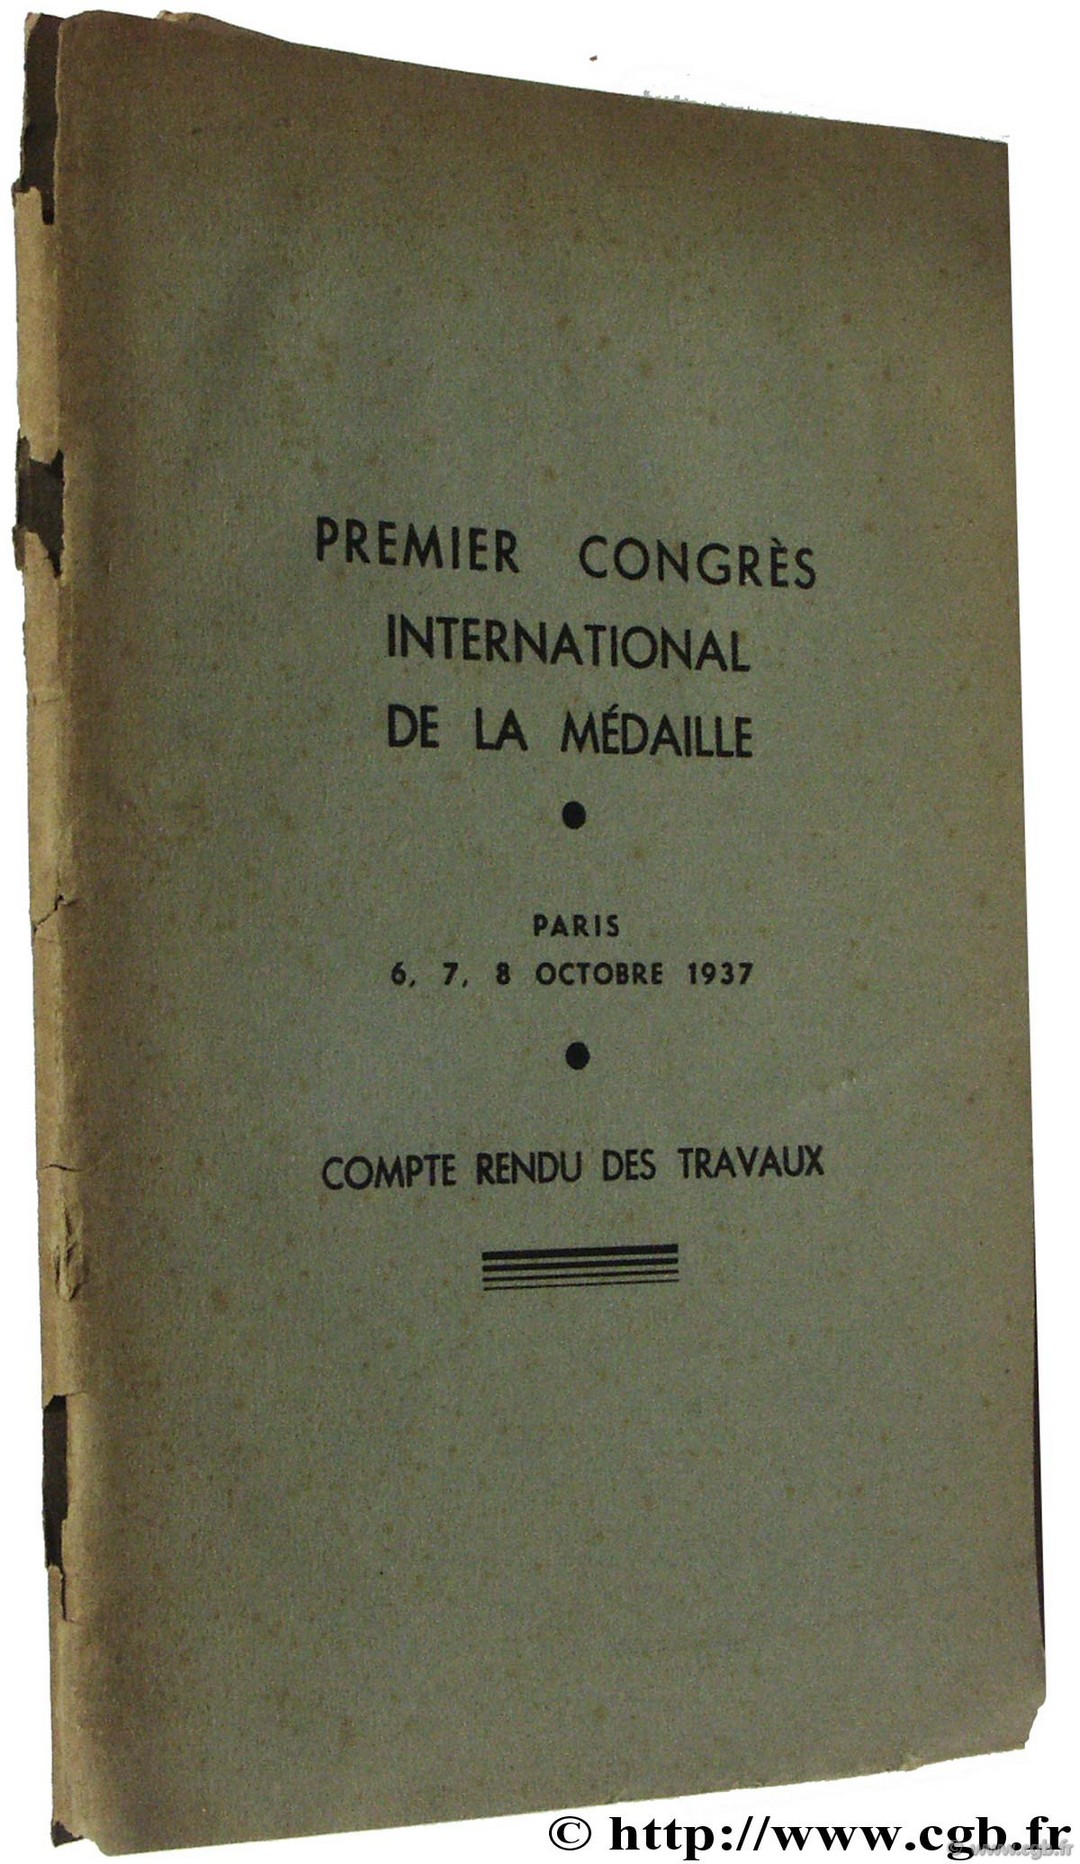 Premier Congrès International de la Médaille, Paris 6-8 octobre 1937, comte-rendu des travaux Congrès